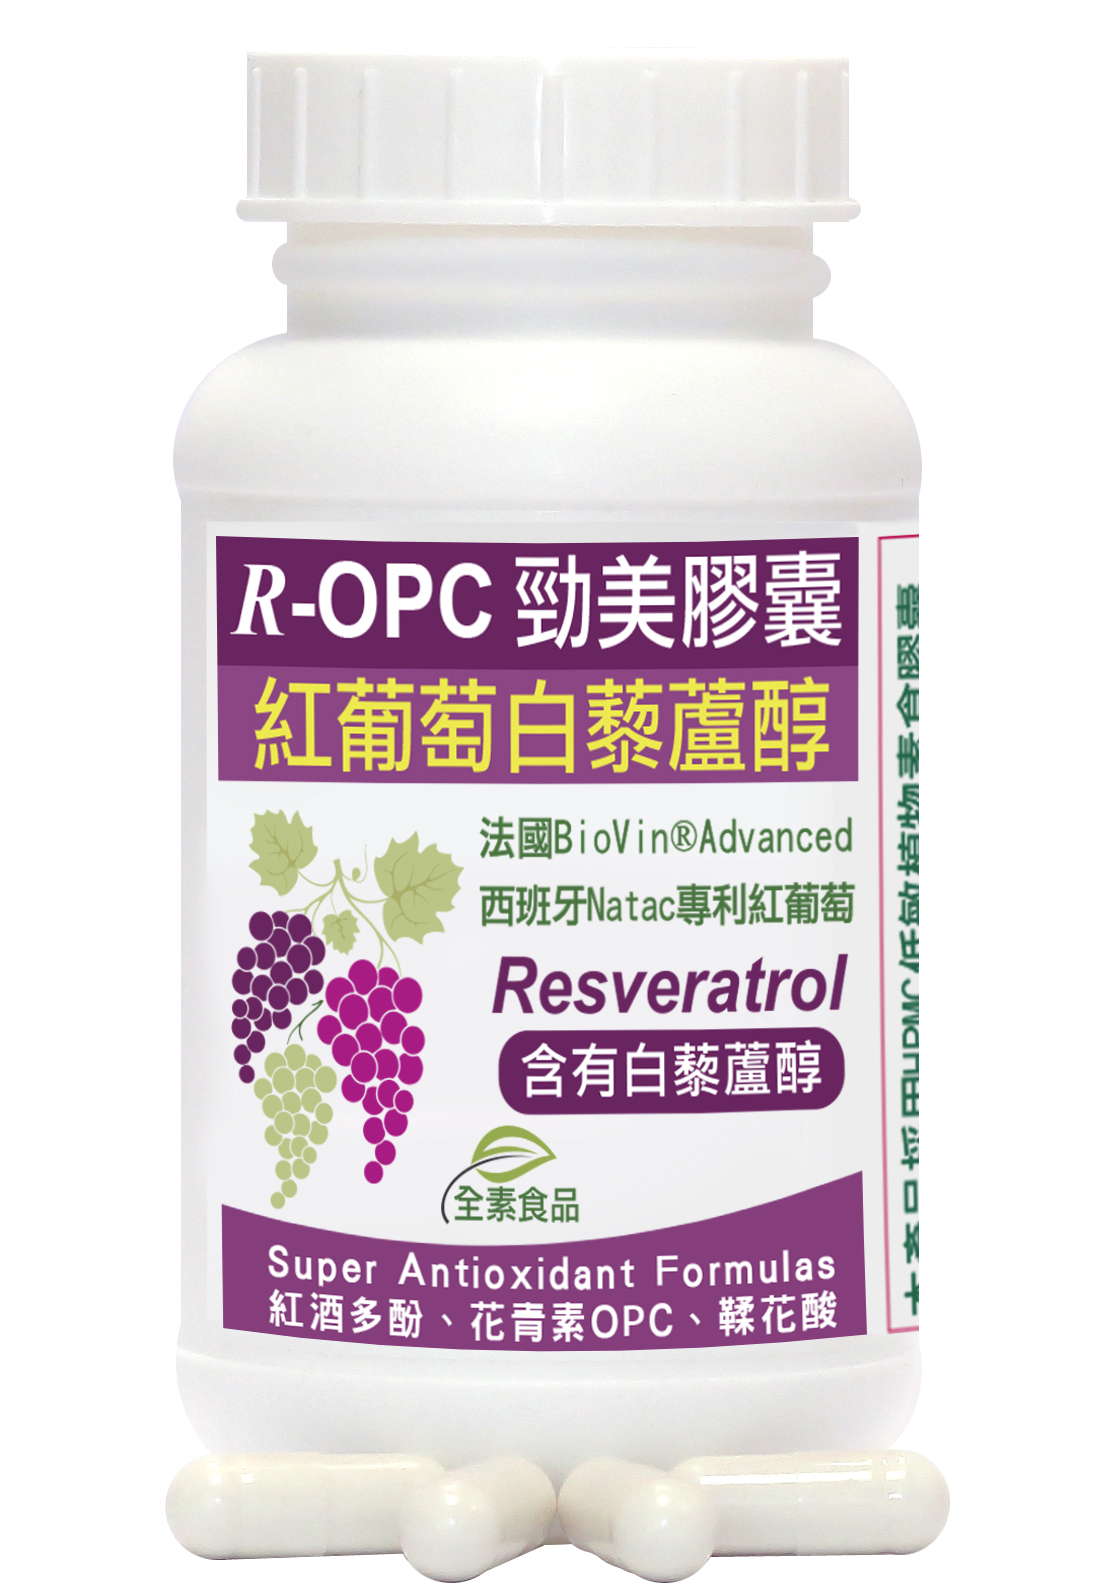 赫而司-R-OPC二代勁美紅葡萄(含白藜蘆醇)植物膠囊-商品圖